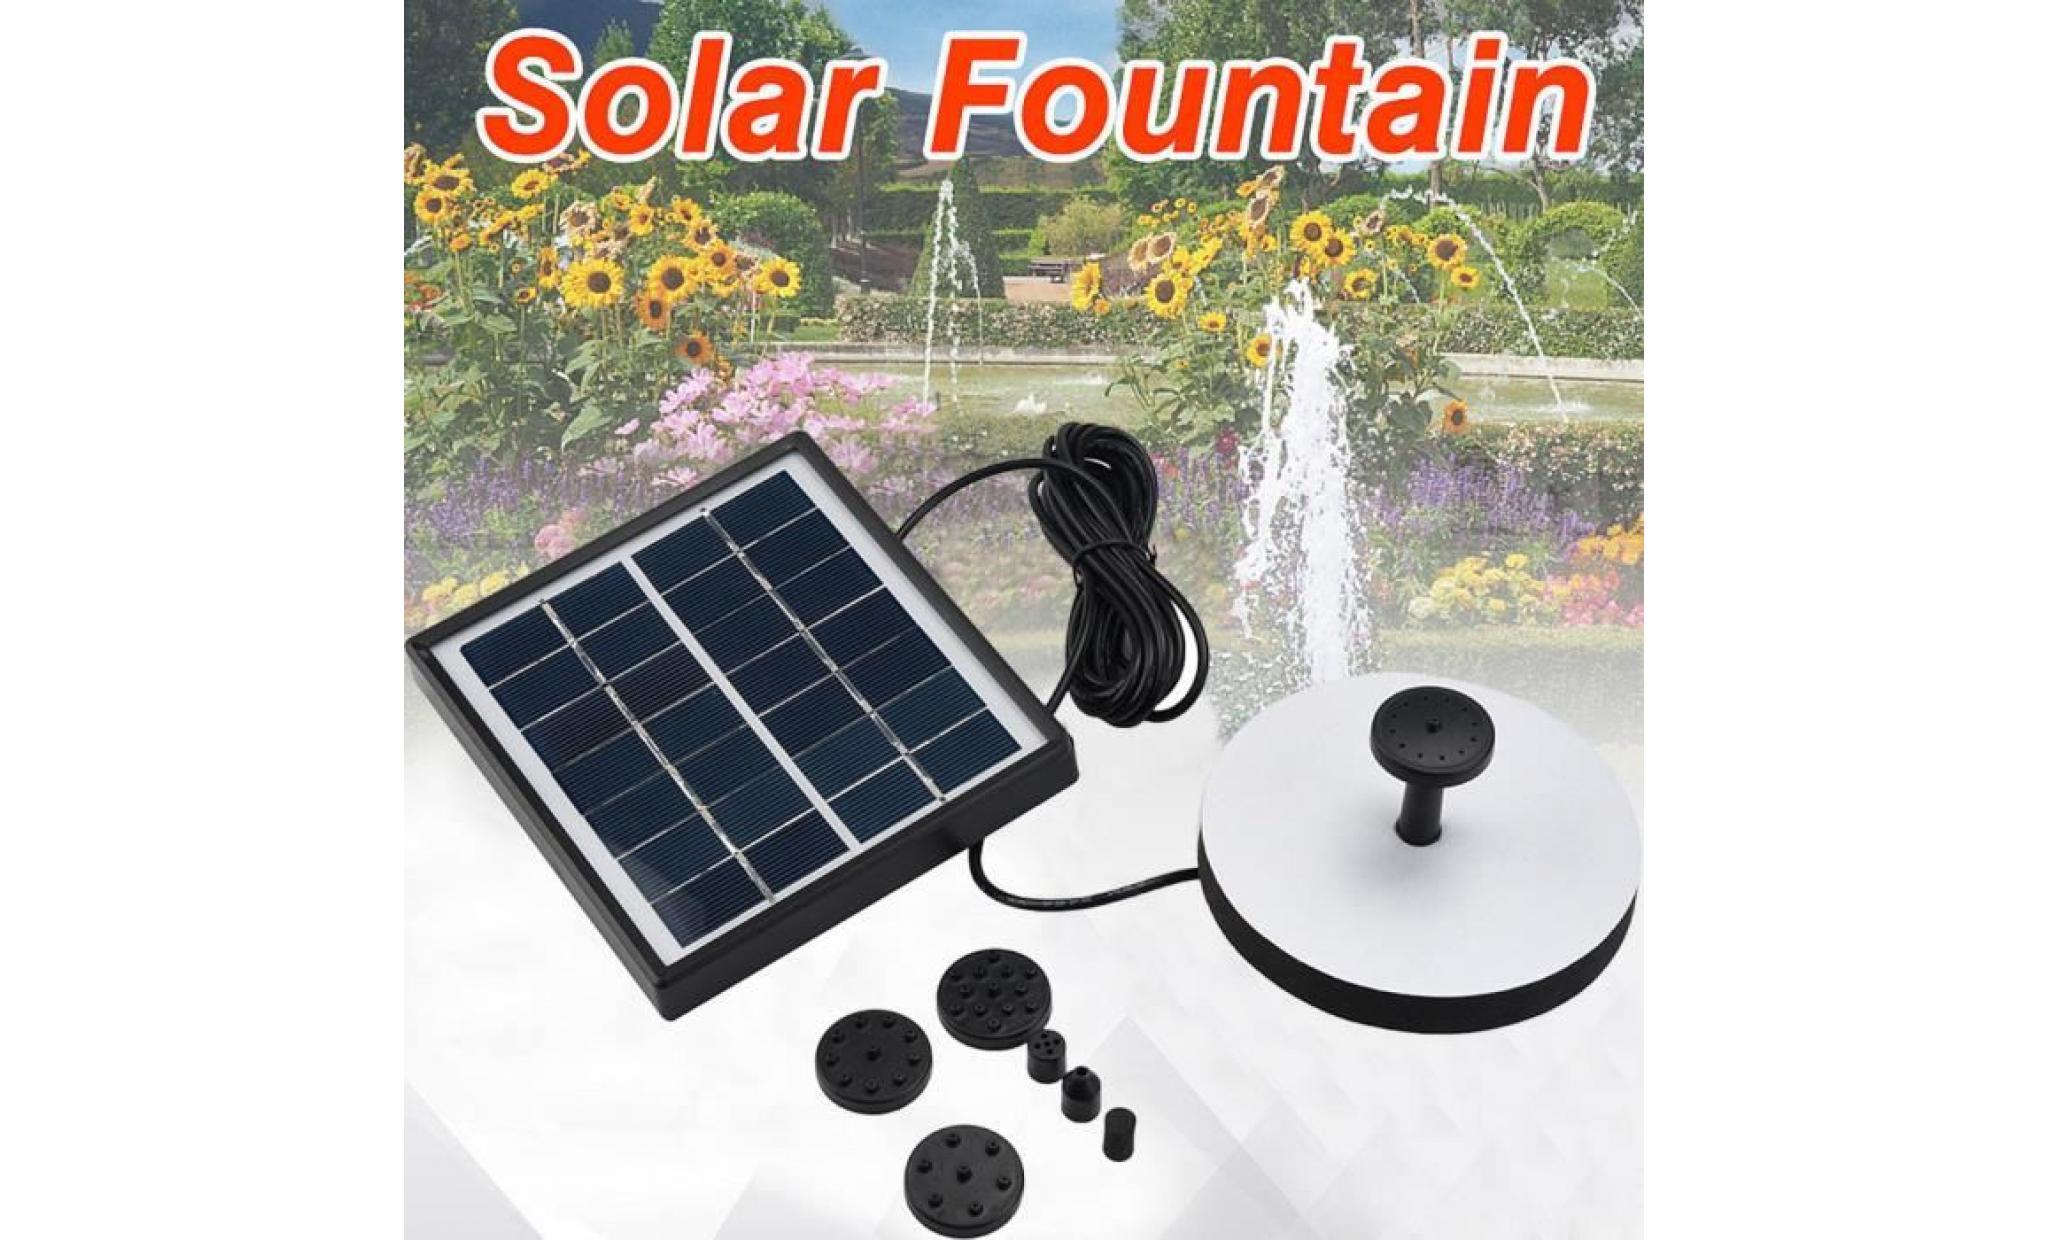 poi@ panneau solaire d'eau d'alimentation fontaine pompe kit piscine étang de jardin arrosage submersible noir_42